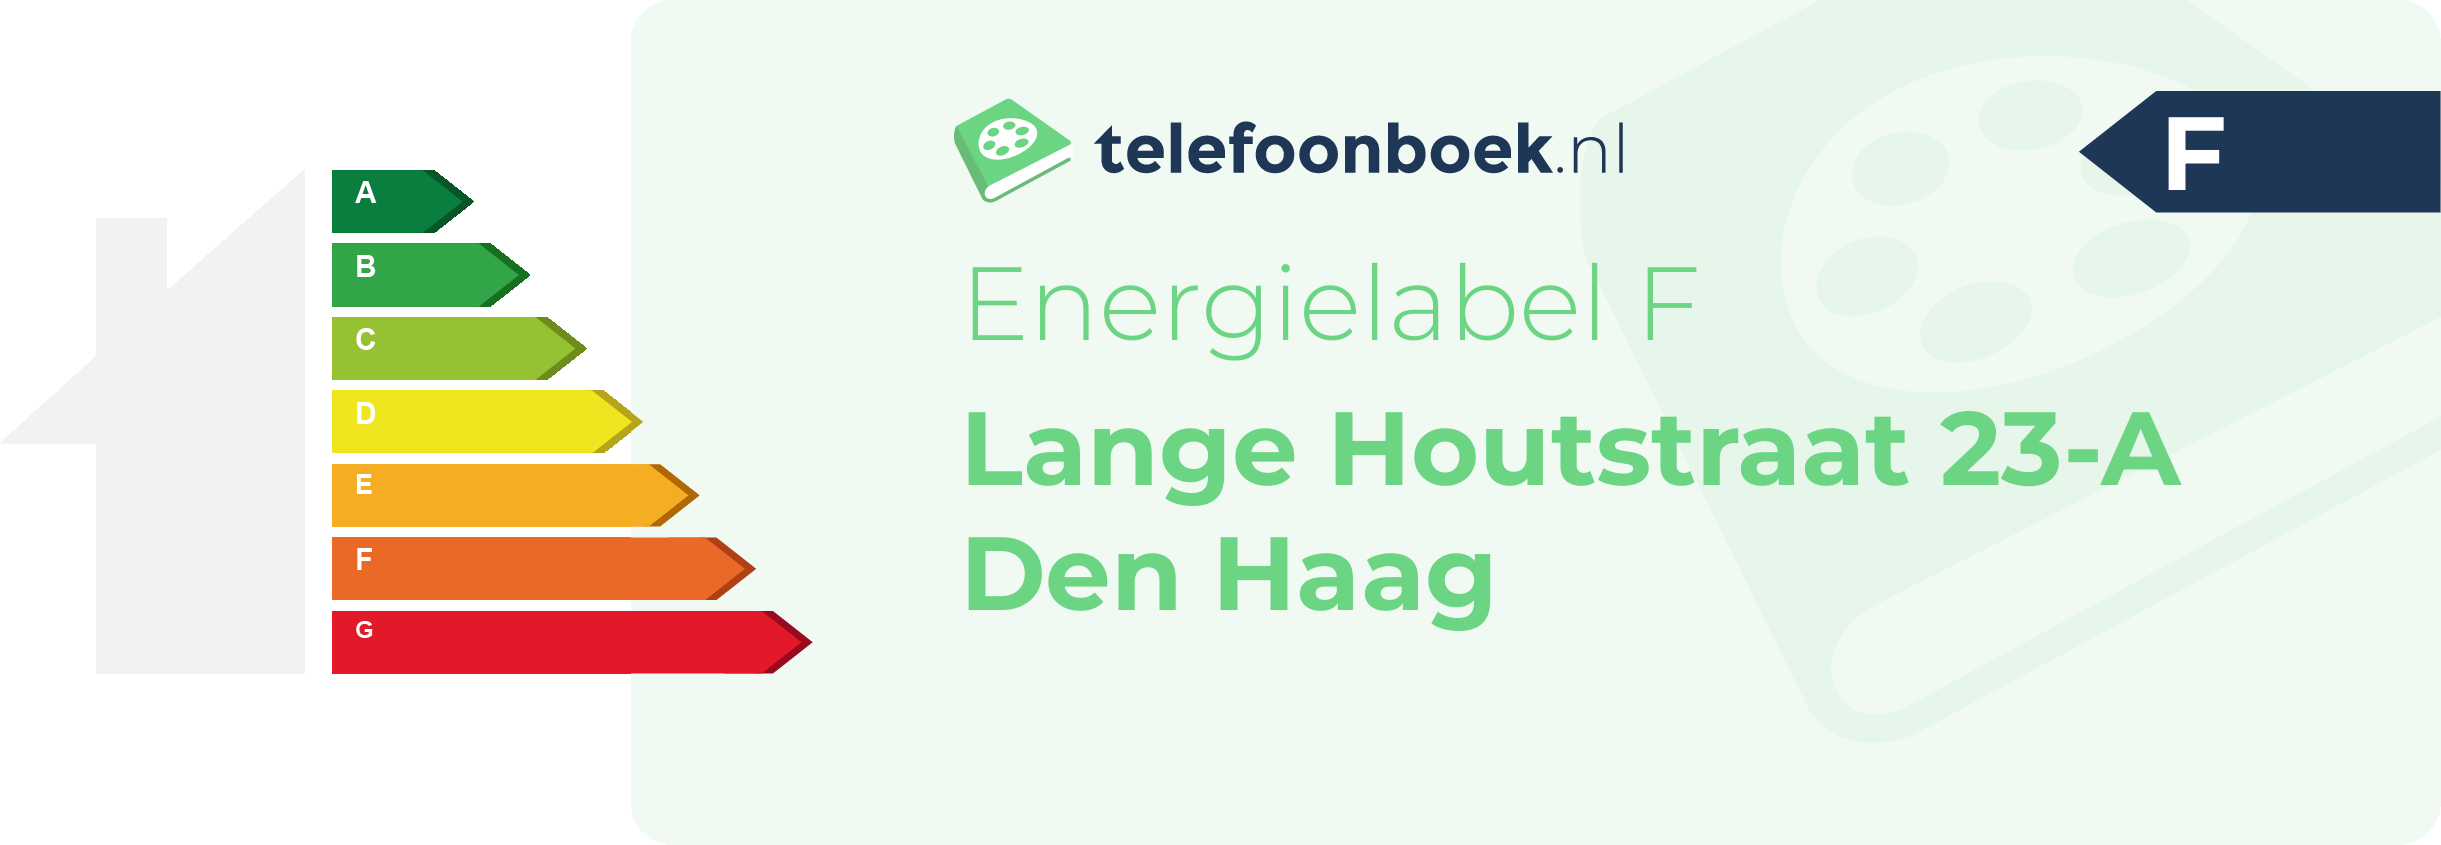 Energielabel Lange Houtstraat 23-A Den Haag